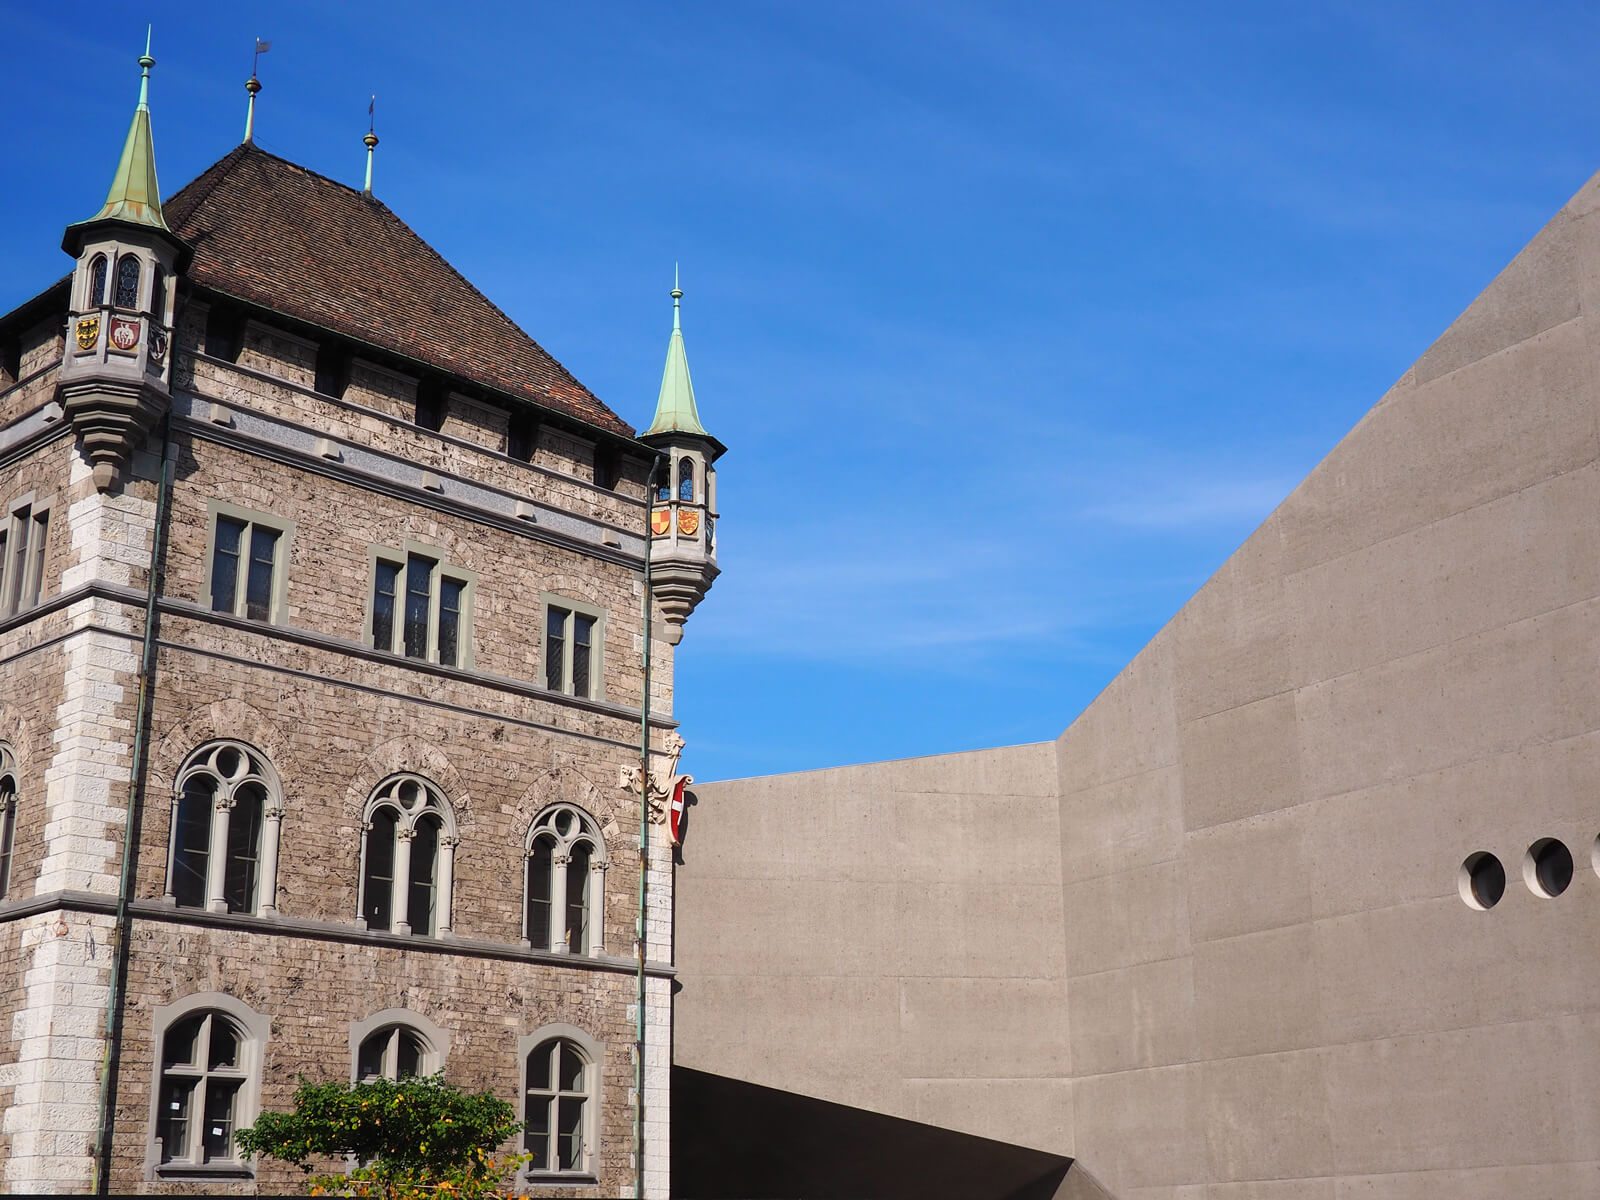 Swiss National Museum in Zurich